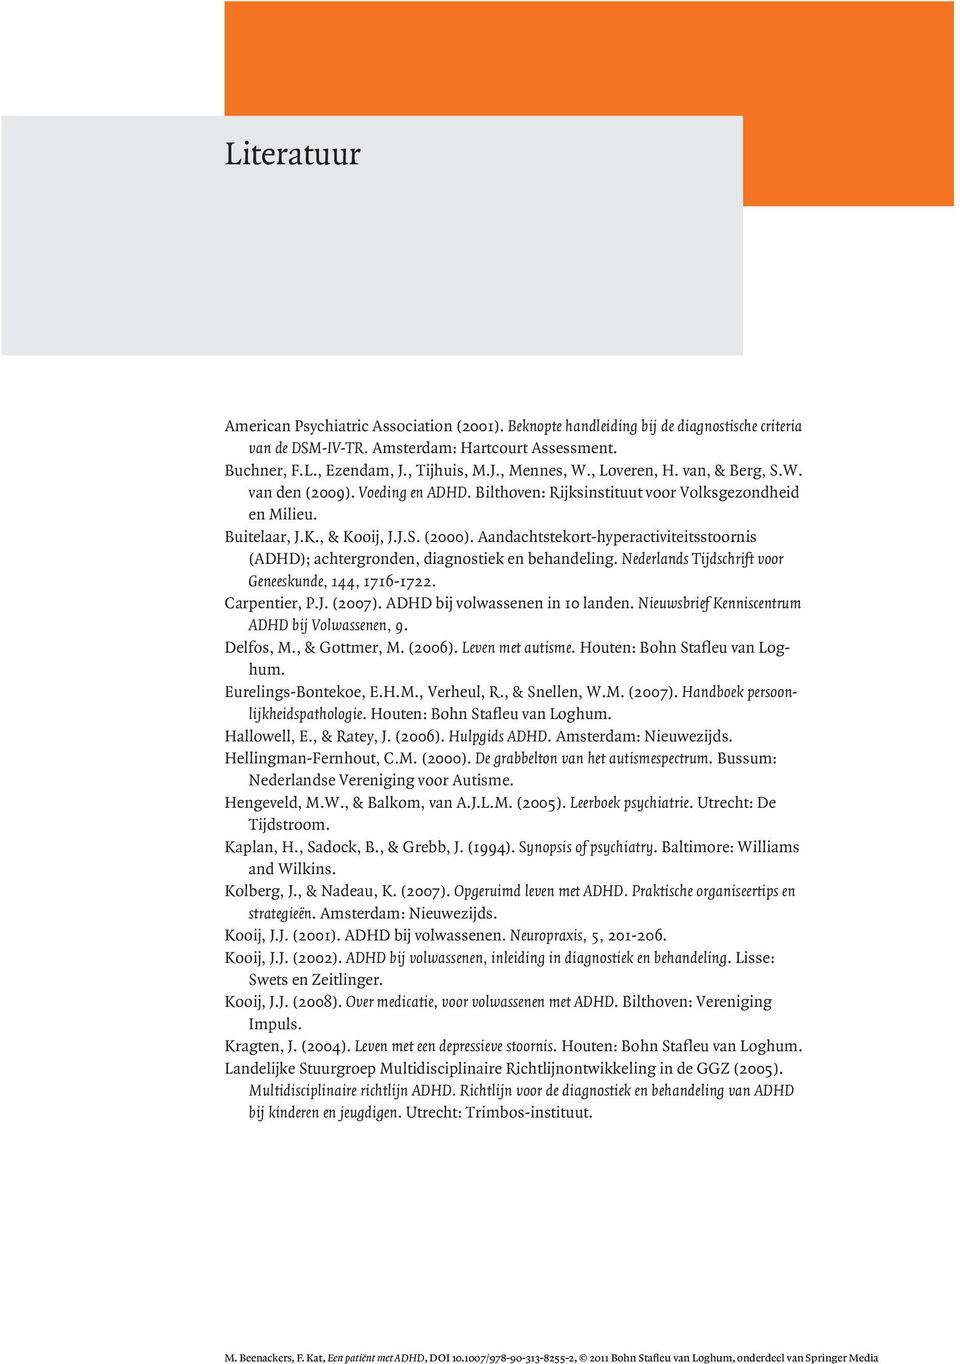 Aandachtstekort-hyperactiviteitsstoornis (ADHD); achtergronden, diagnostiek en behandeling. Nederlands Tijdschrift voor Geneeskunde, 144, 1716-1722. Carpentier, P.J. (2007).